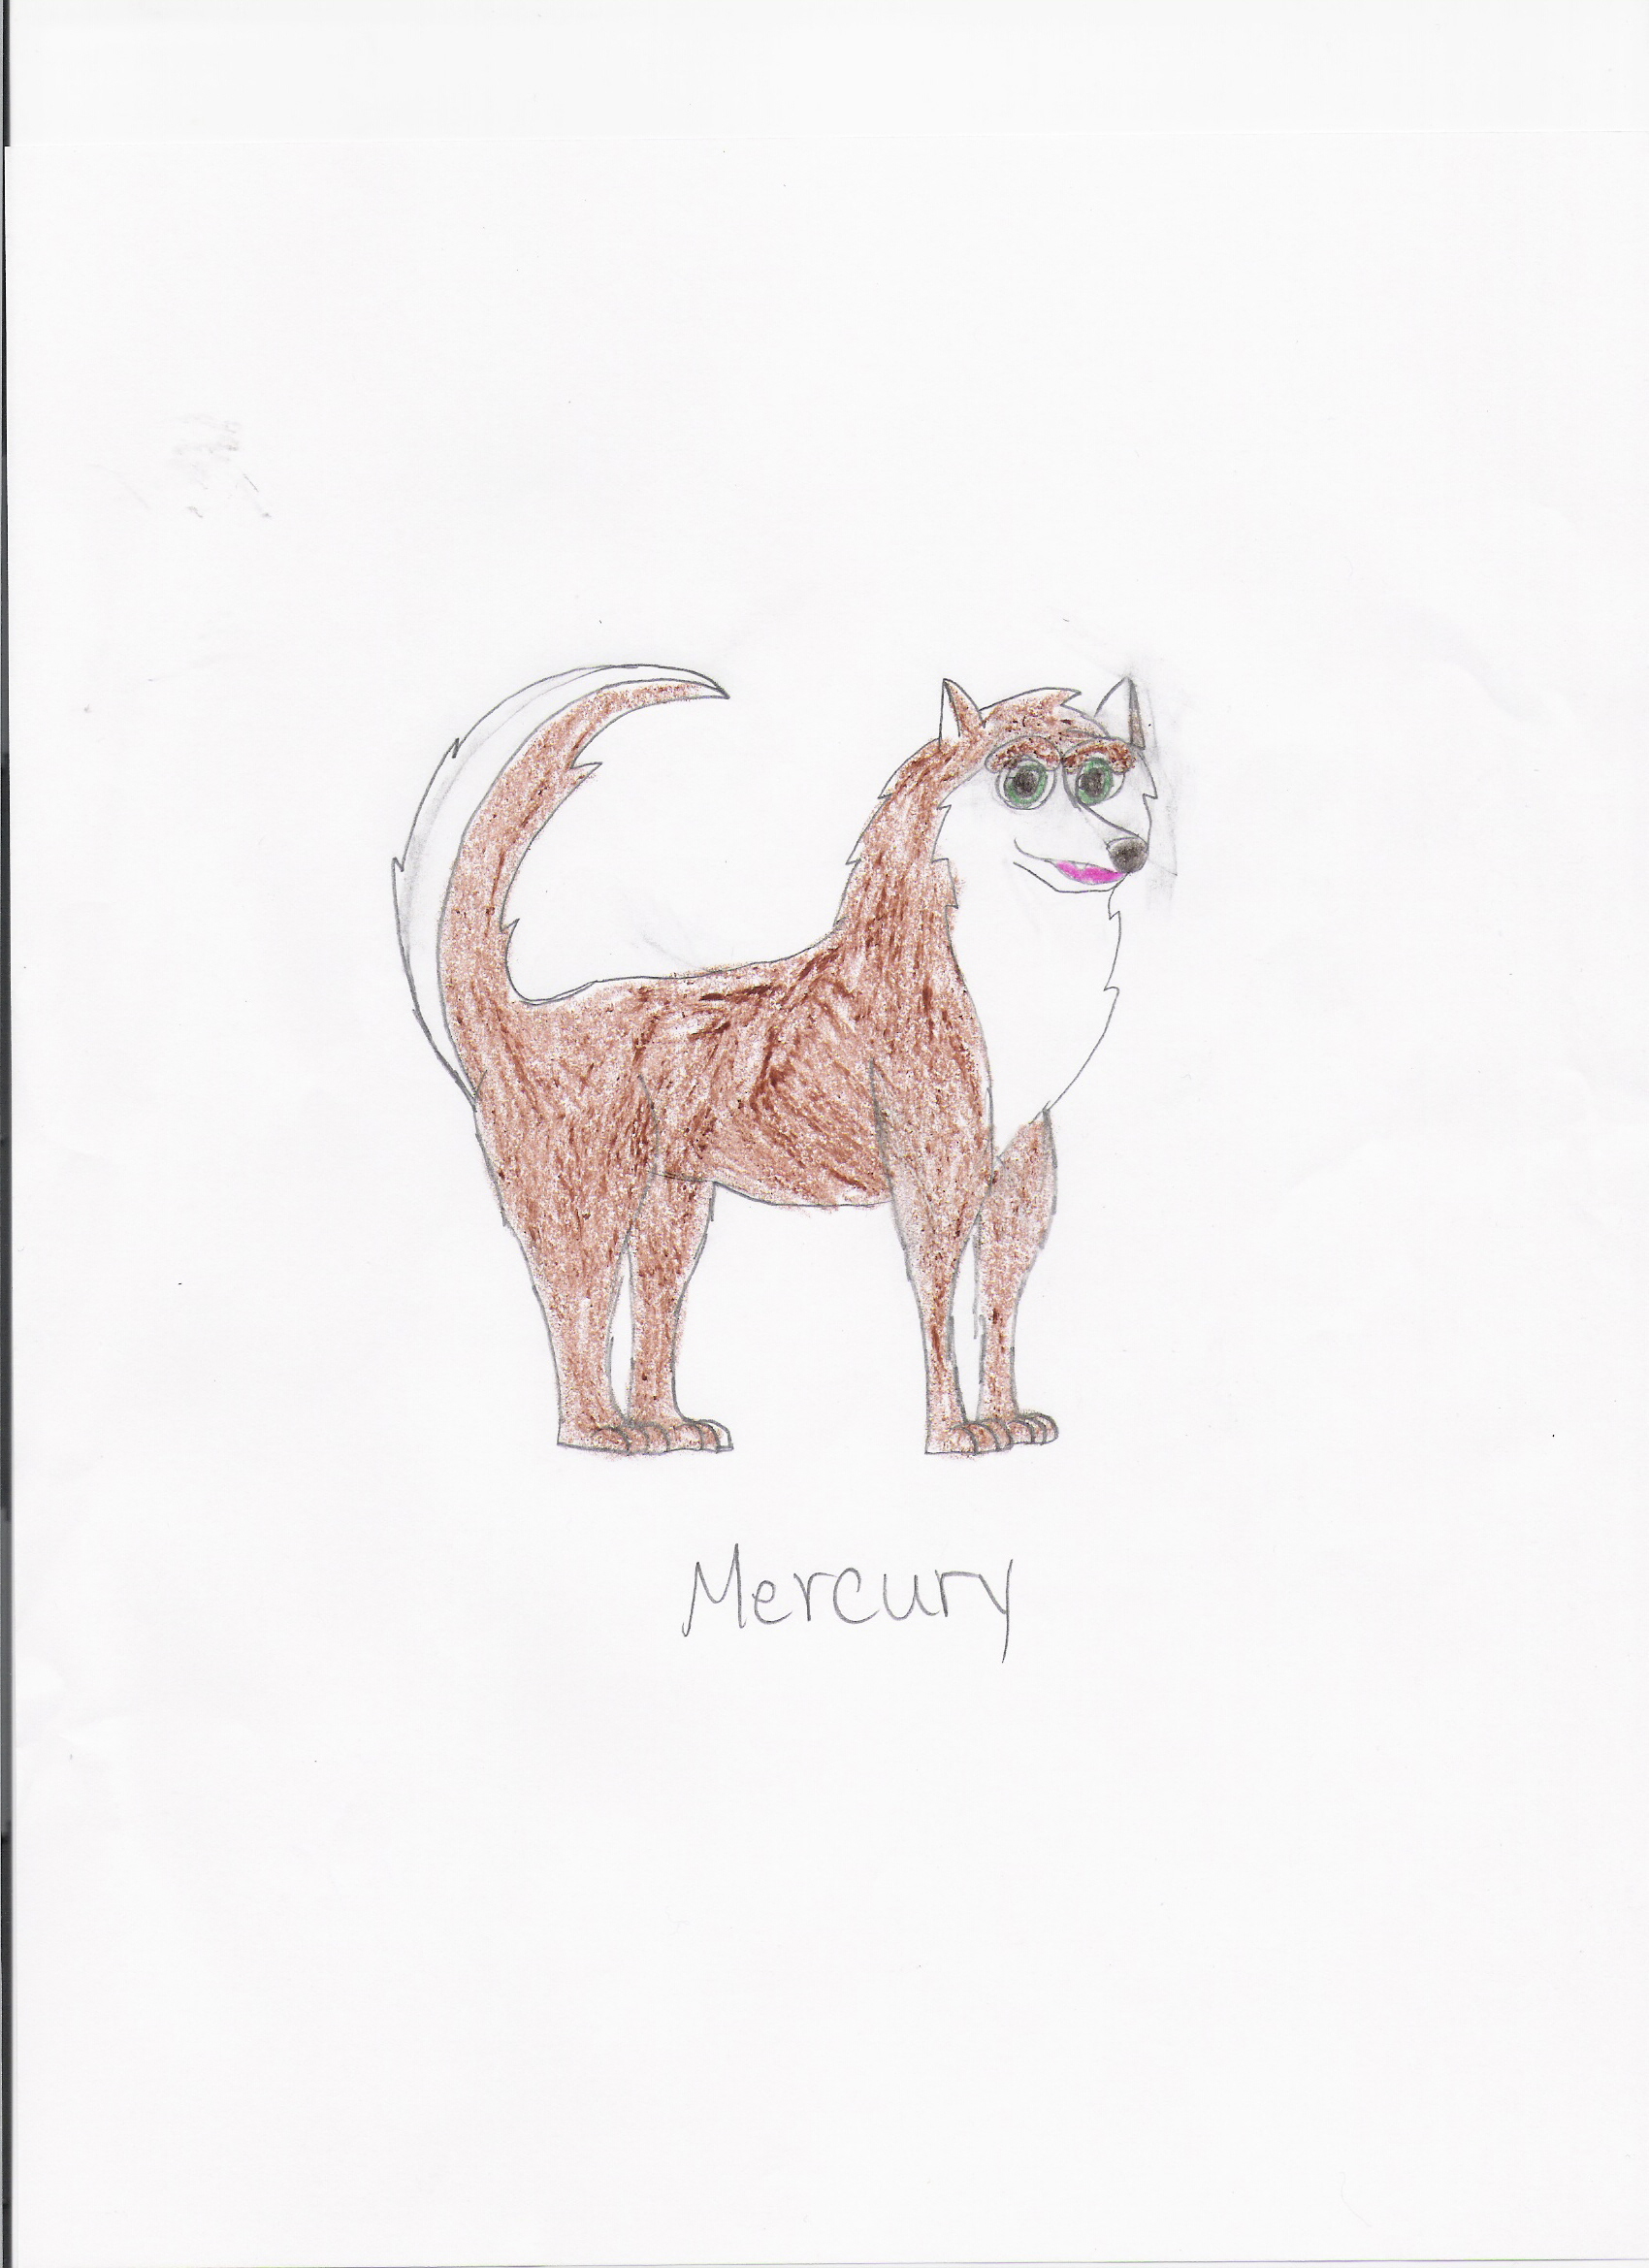 My OC Mercury by rileywolf